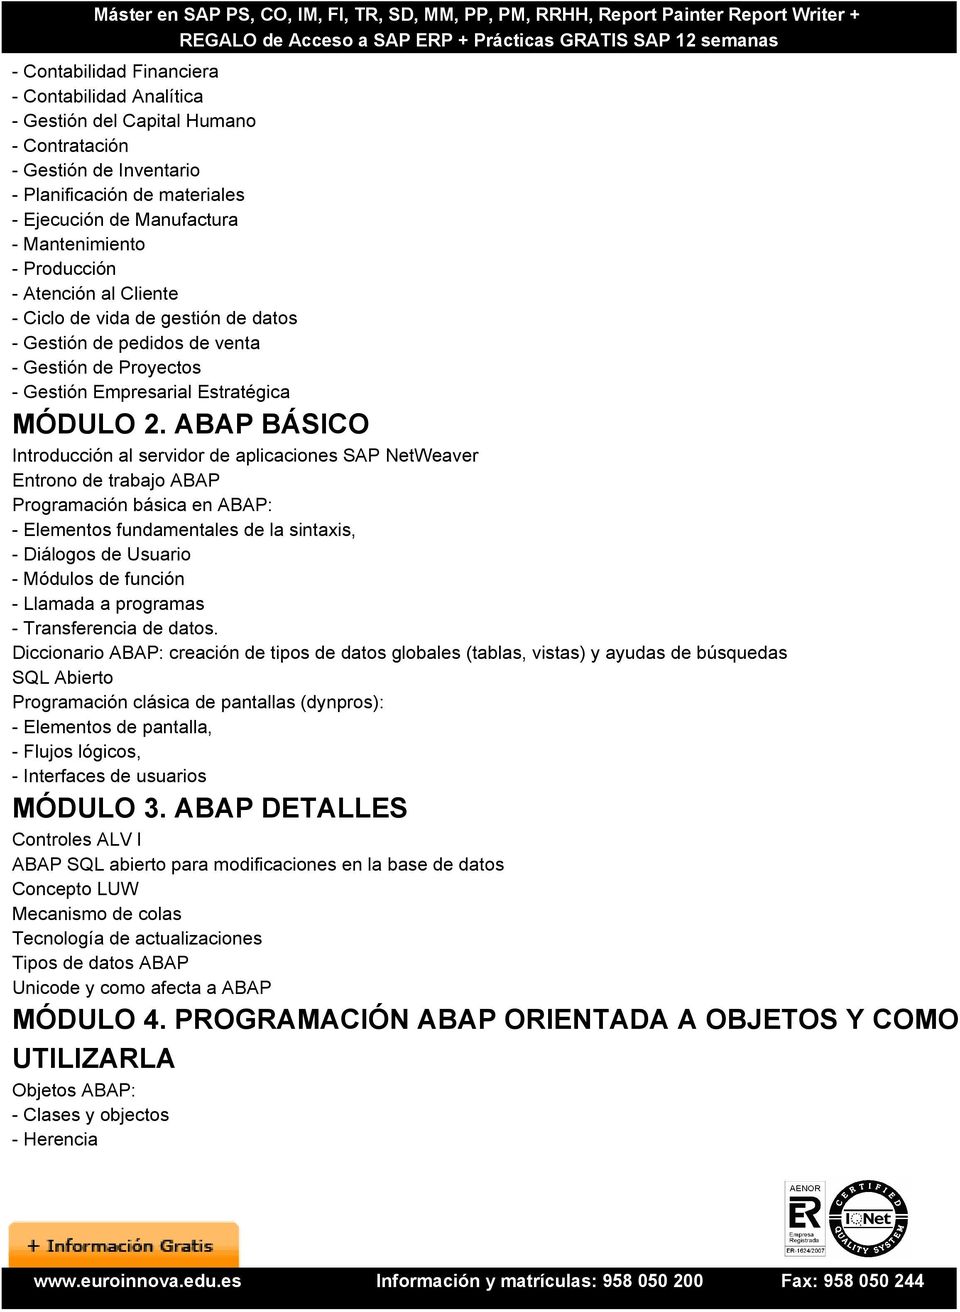 ABAP BÁSICO Introducción al servidor de aplicaciones SAP NetWeaver Entrono de trabajo ABAP Programación básica en ABAP: - Elementos fundamentales de la sintaxis, - Diálogos de Usuario - Módulos de